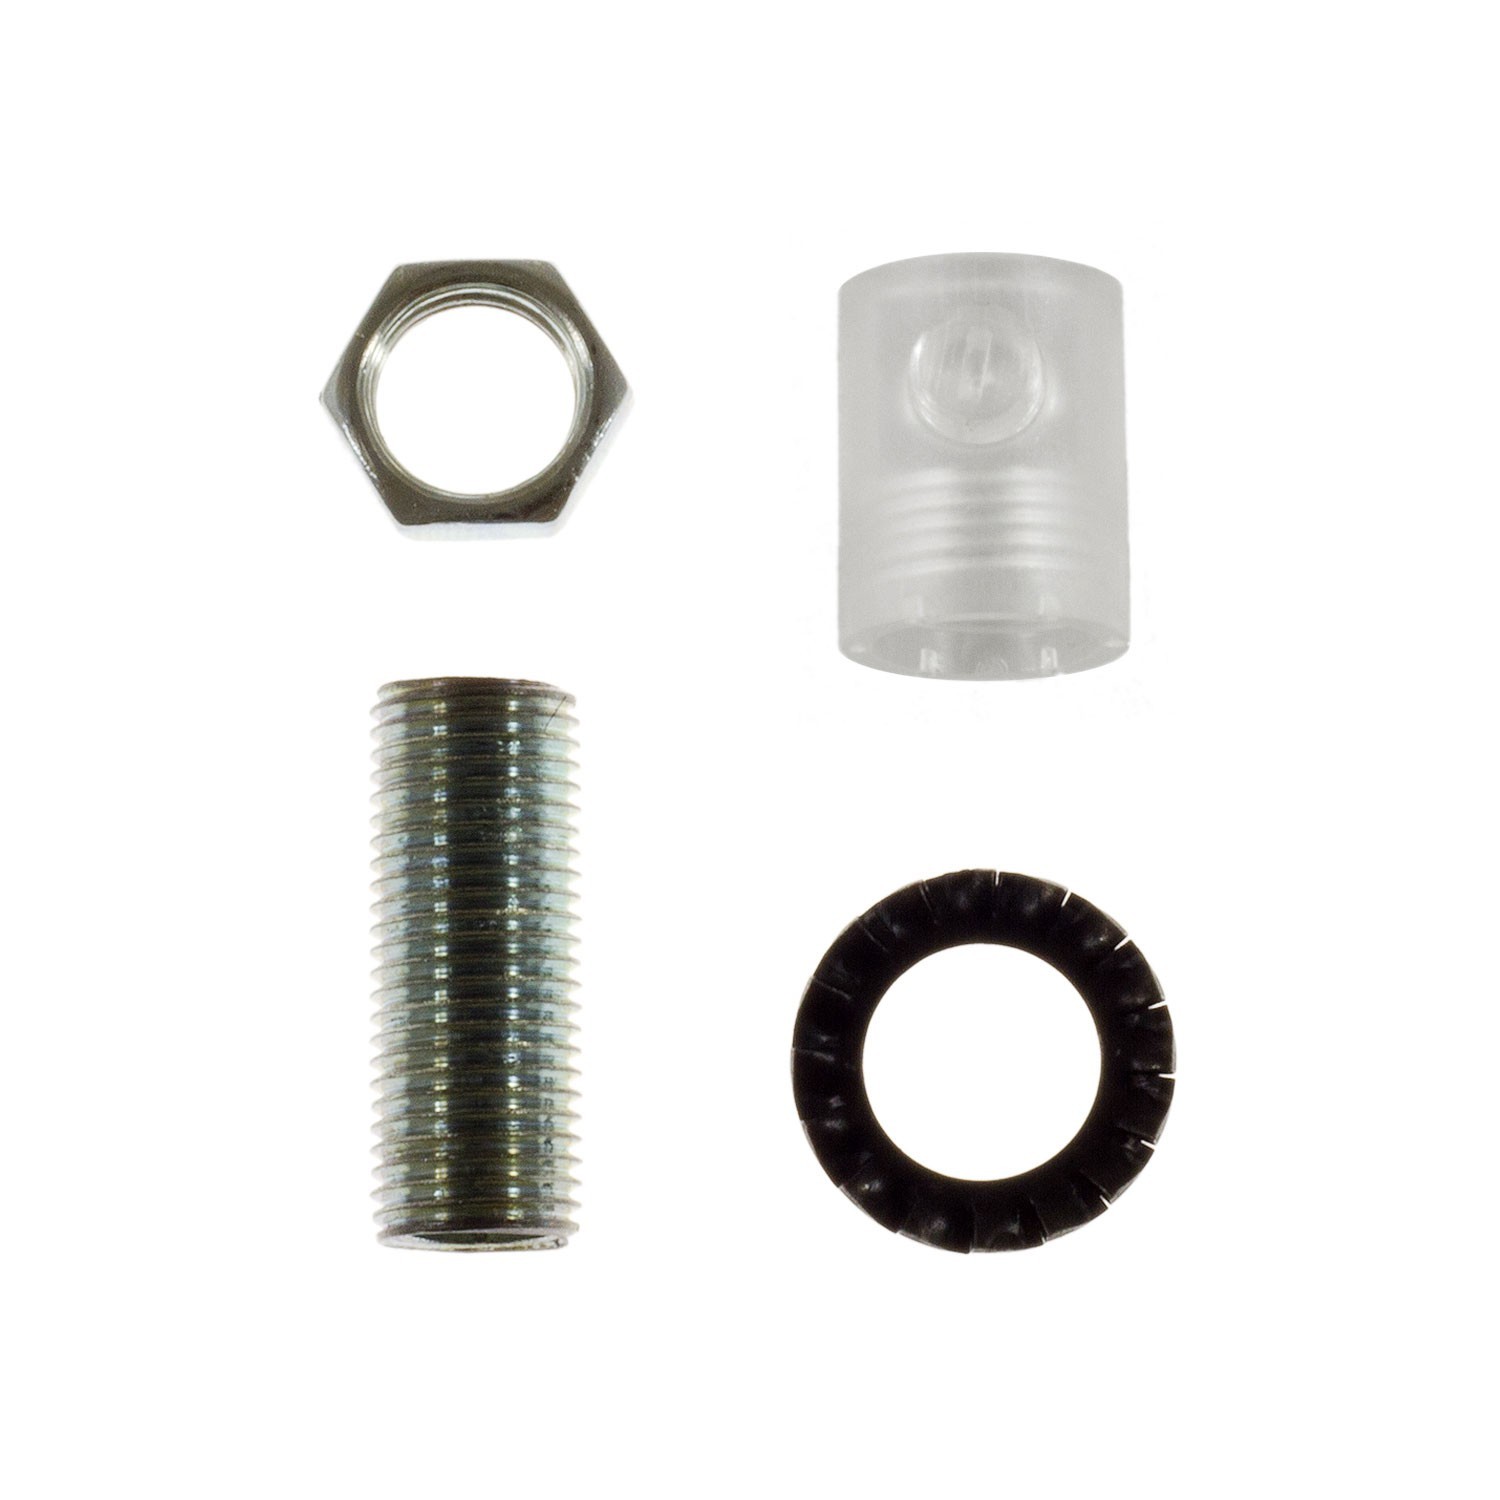 Cilindrische plastic kabelklem compleet met pendelbuis, moer en ring